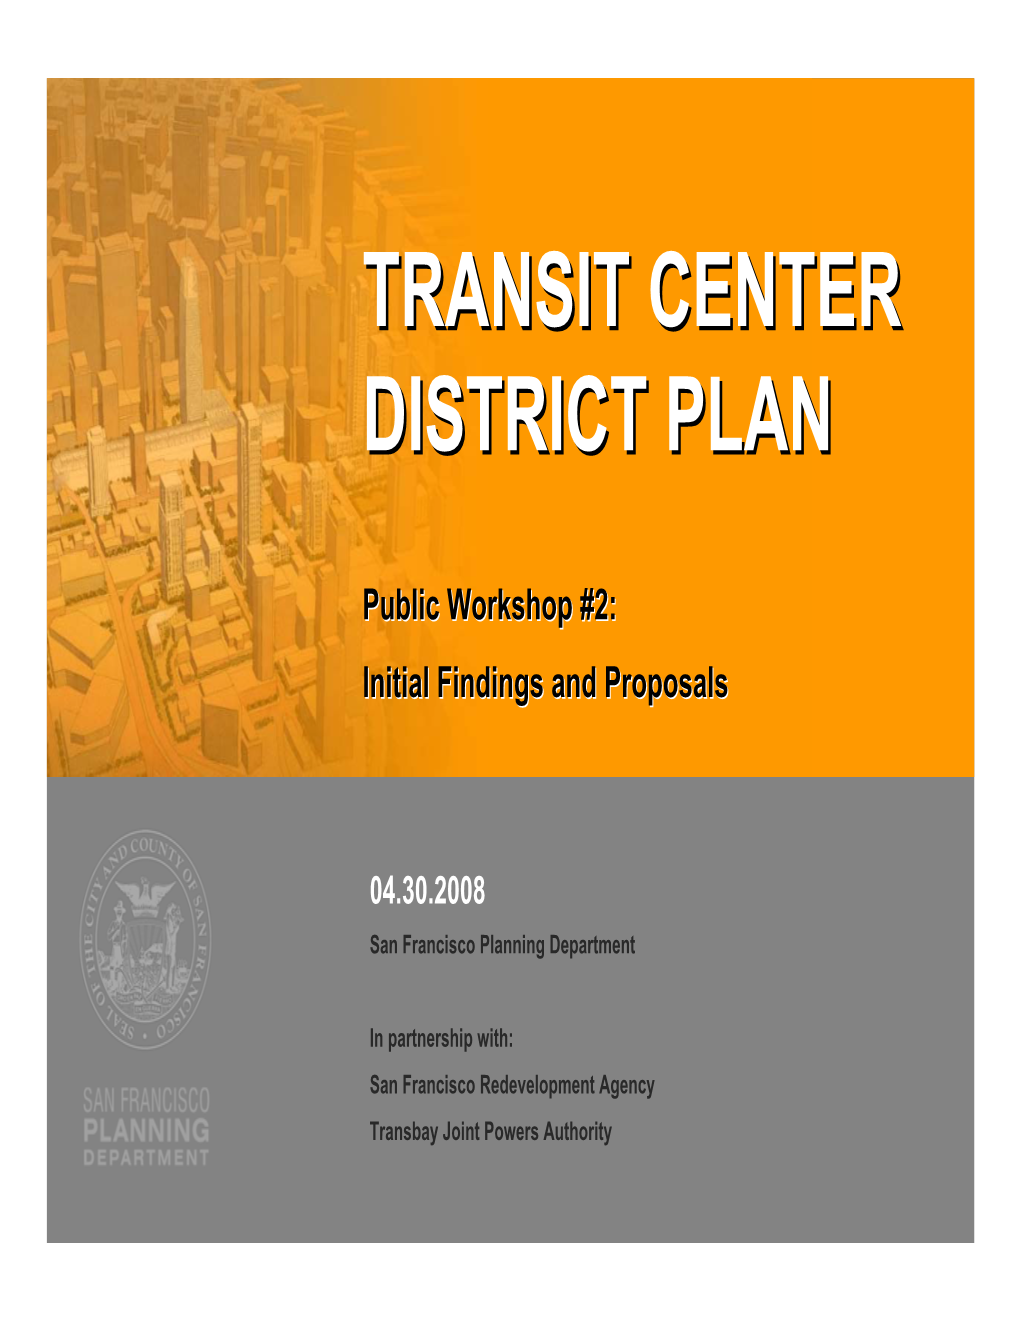 Transit Center District Plan